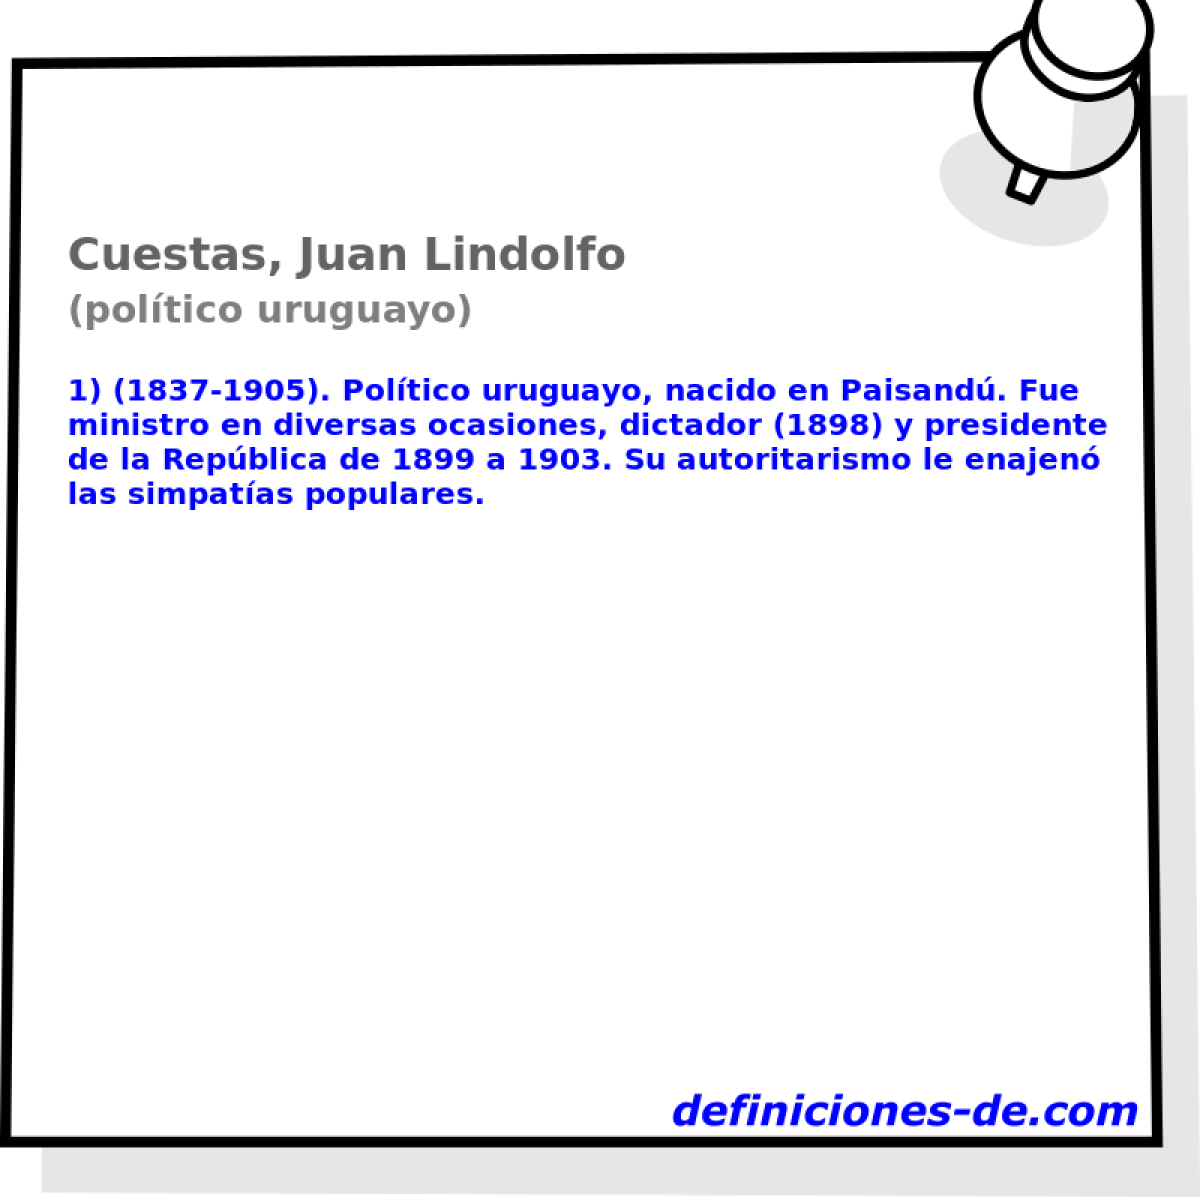 Cuestas, Juan Lindolfo (poltico uruguayo)